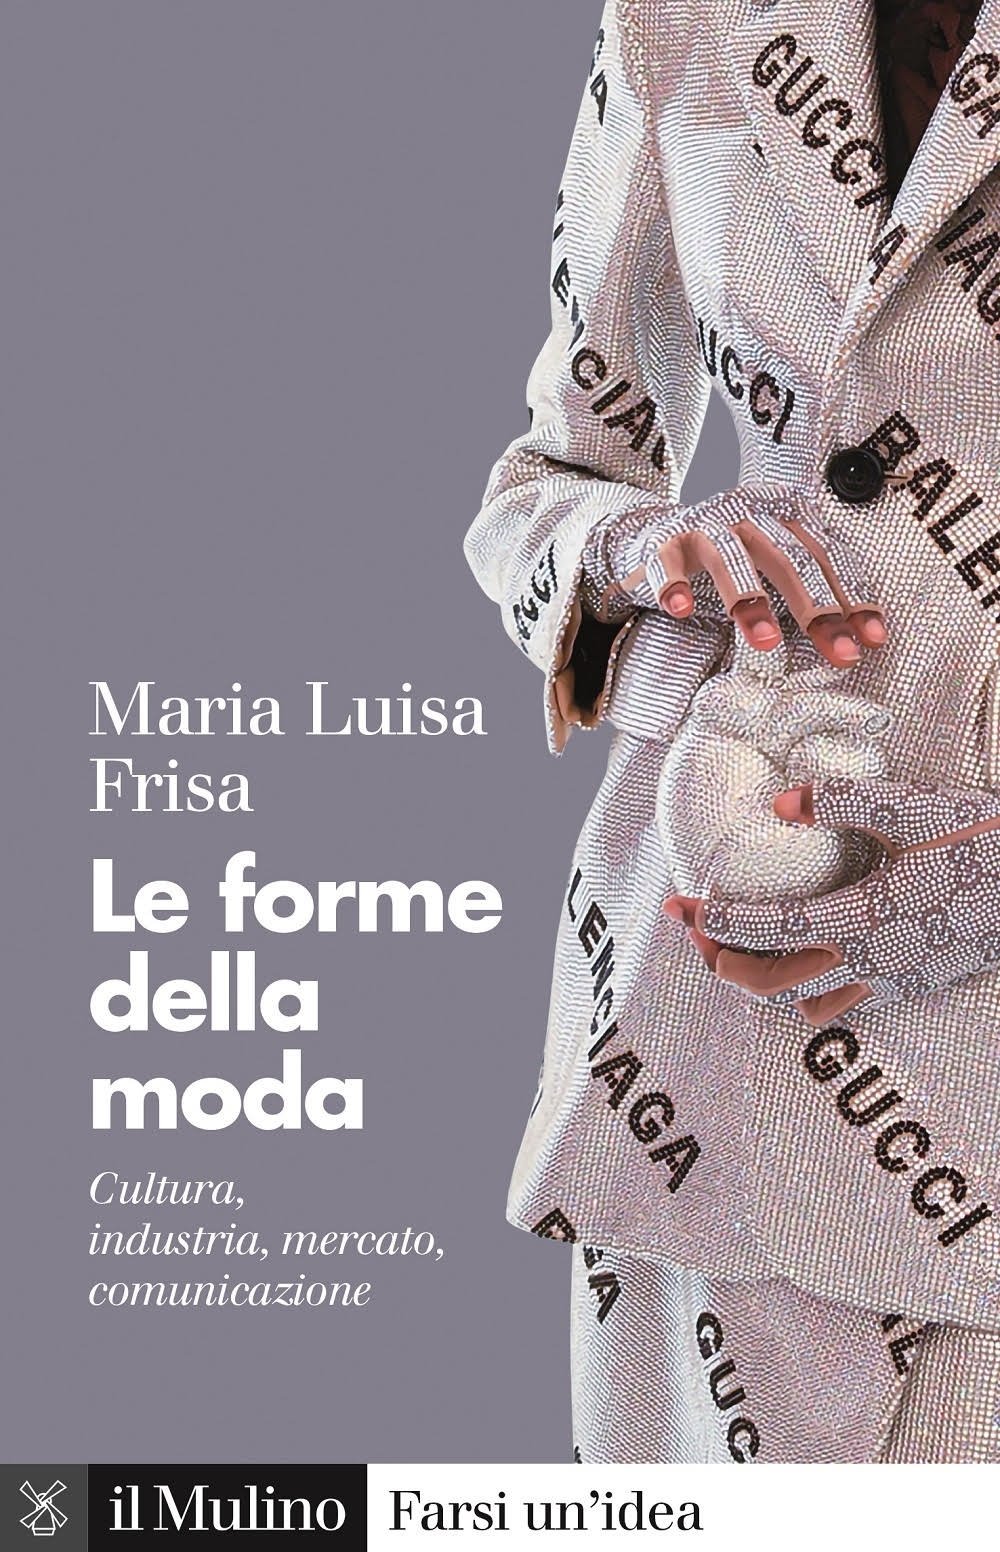 Maria Luisa Frisa Le forme della moda (il Mulino, Bologna 2022)